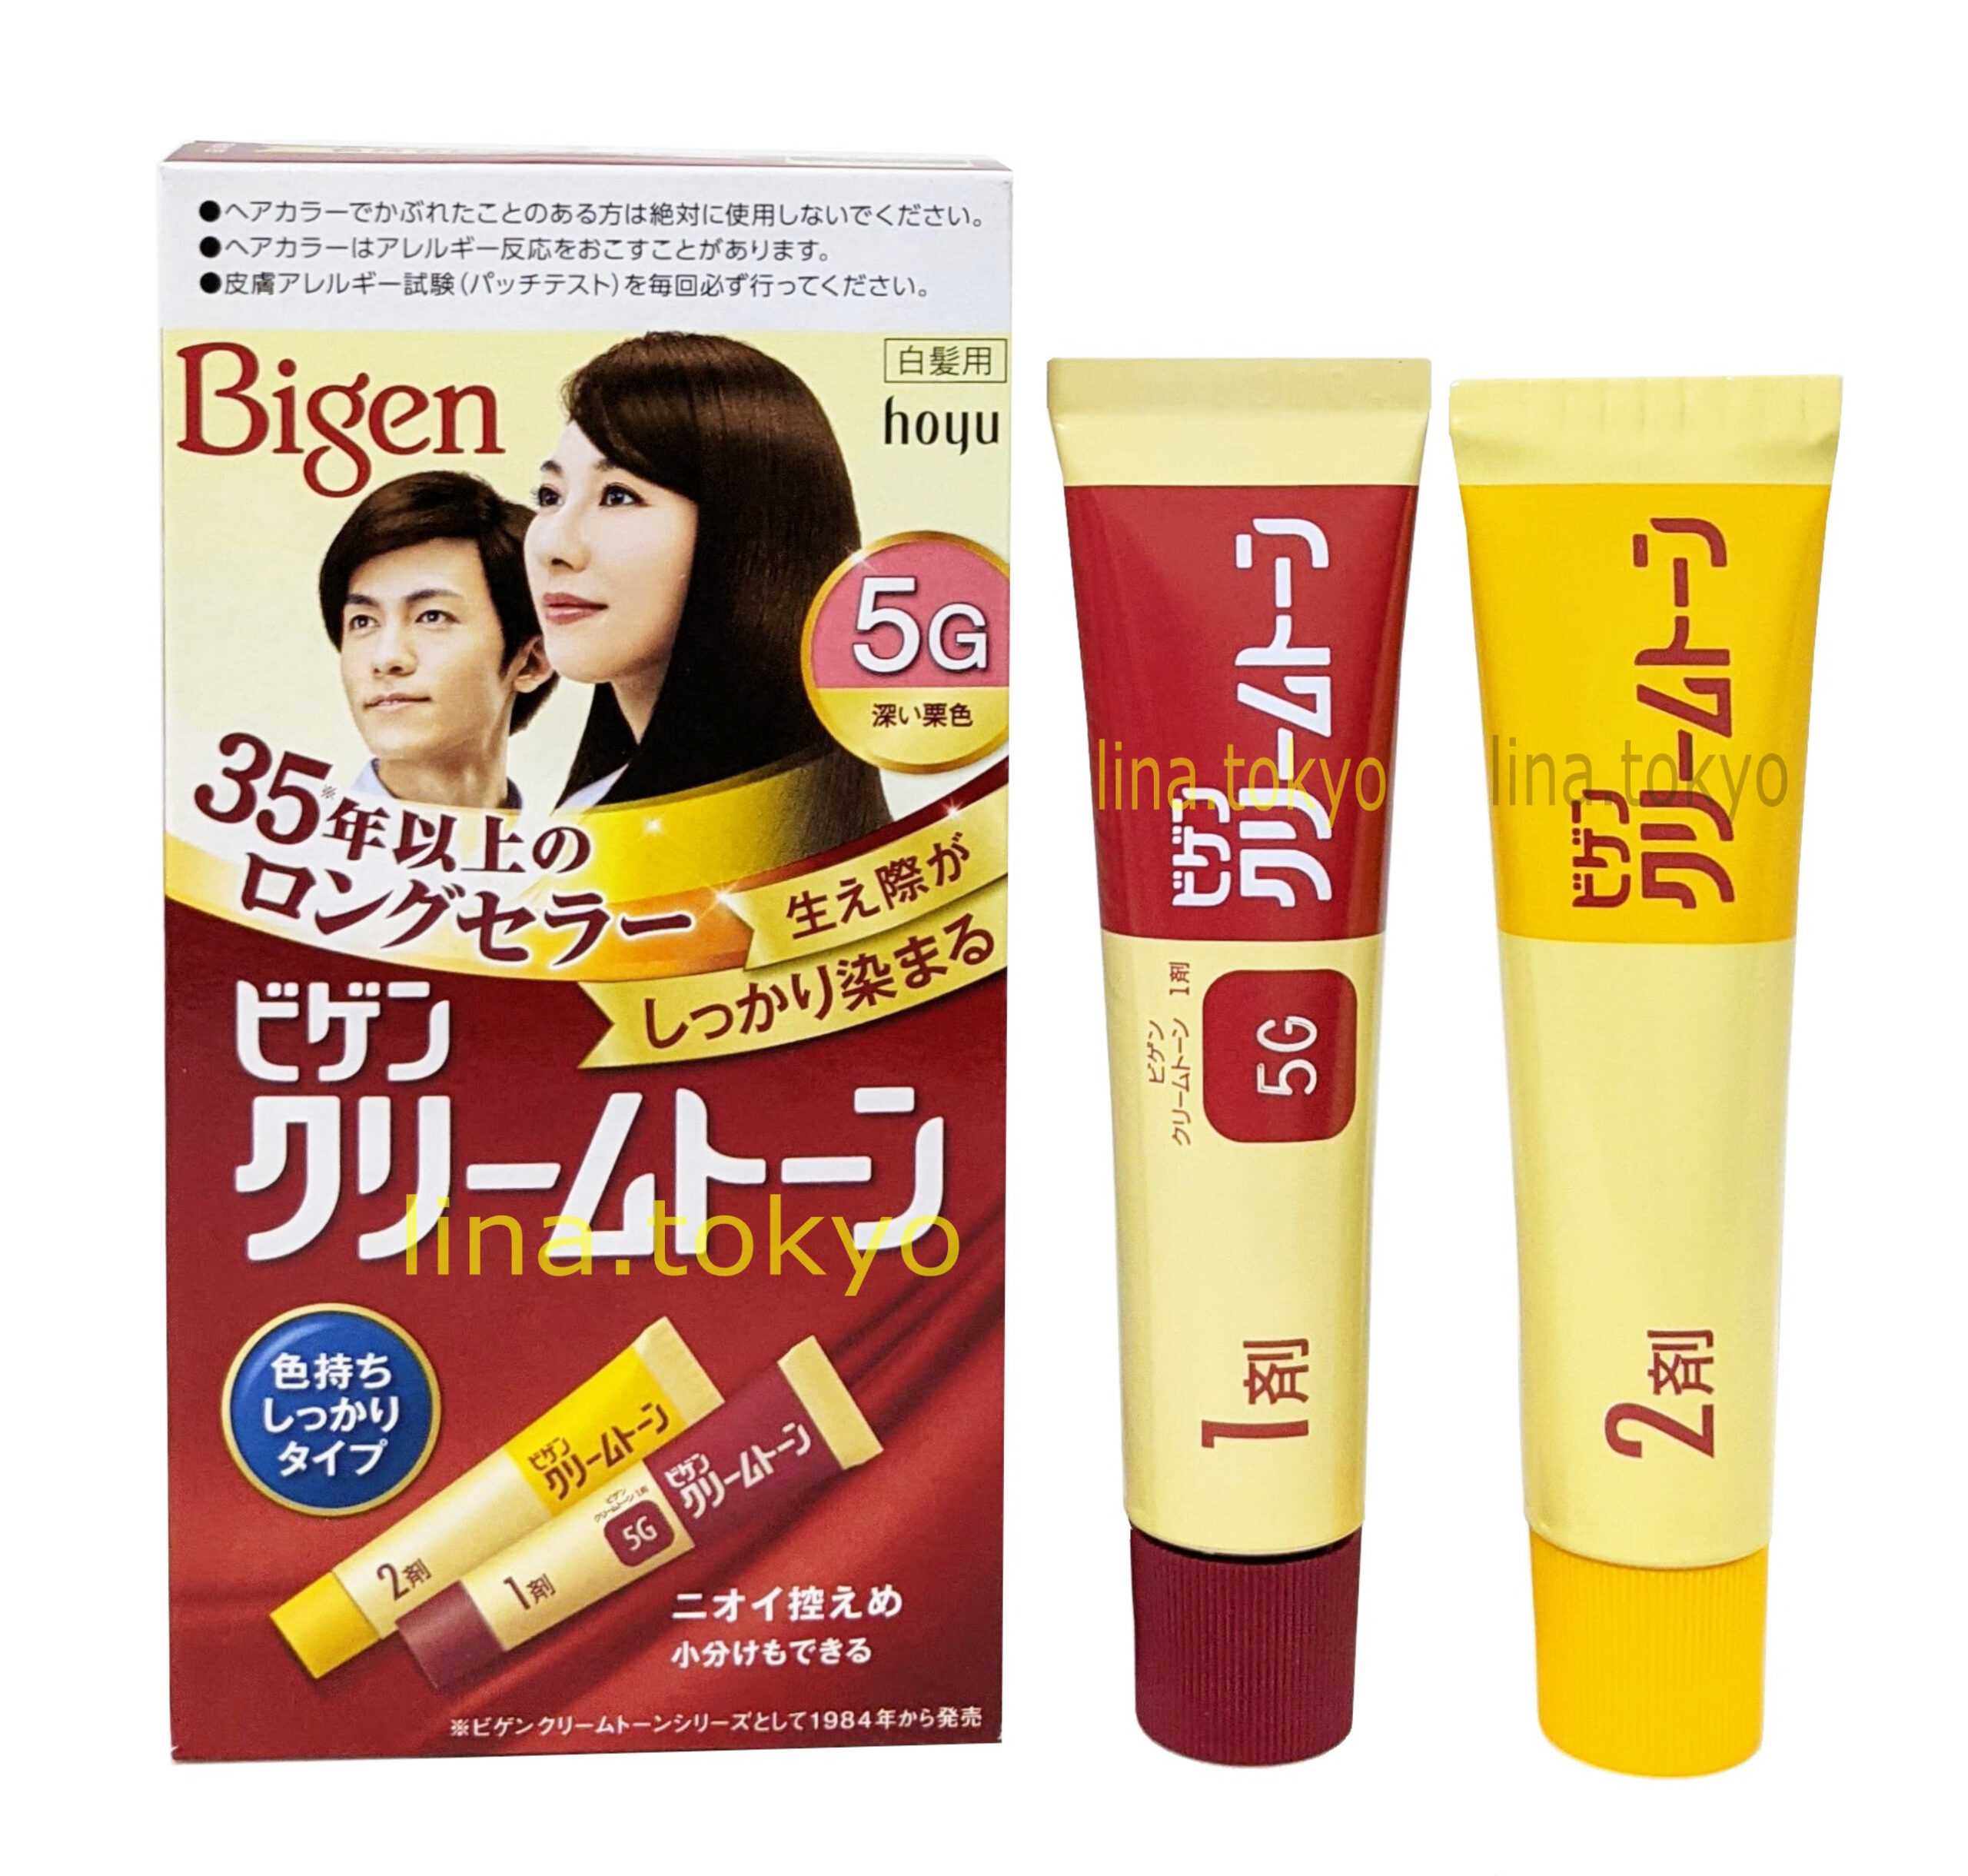 Thuốc nhuộm tóc Bigen nhật bản Cream Tone 5G màu nâu hạt dẻ đậm cho tóc bạc, tóc thường, mượt tóc, không gây hư tổn tóc, không mùi hôi (Quasi-drug) (Bi8009) (Miễn phí giao hàng)